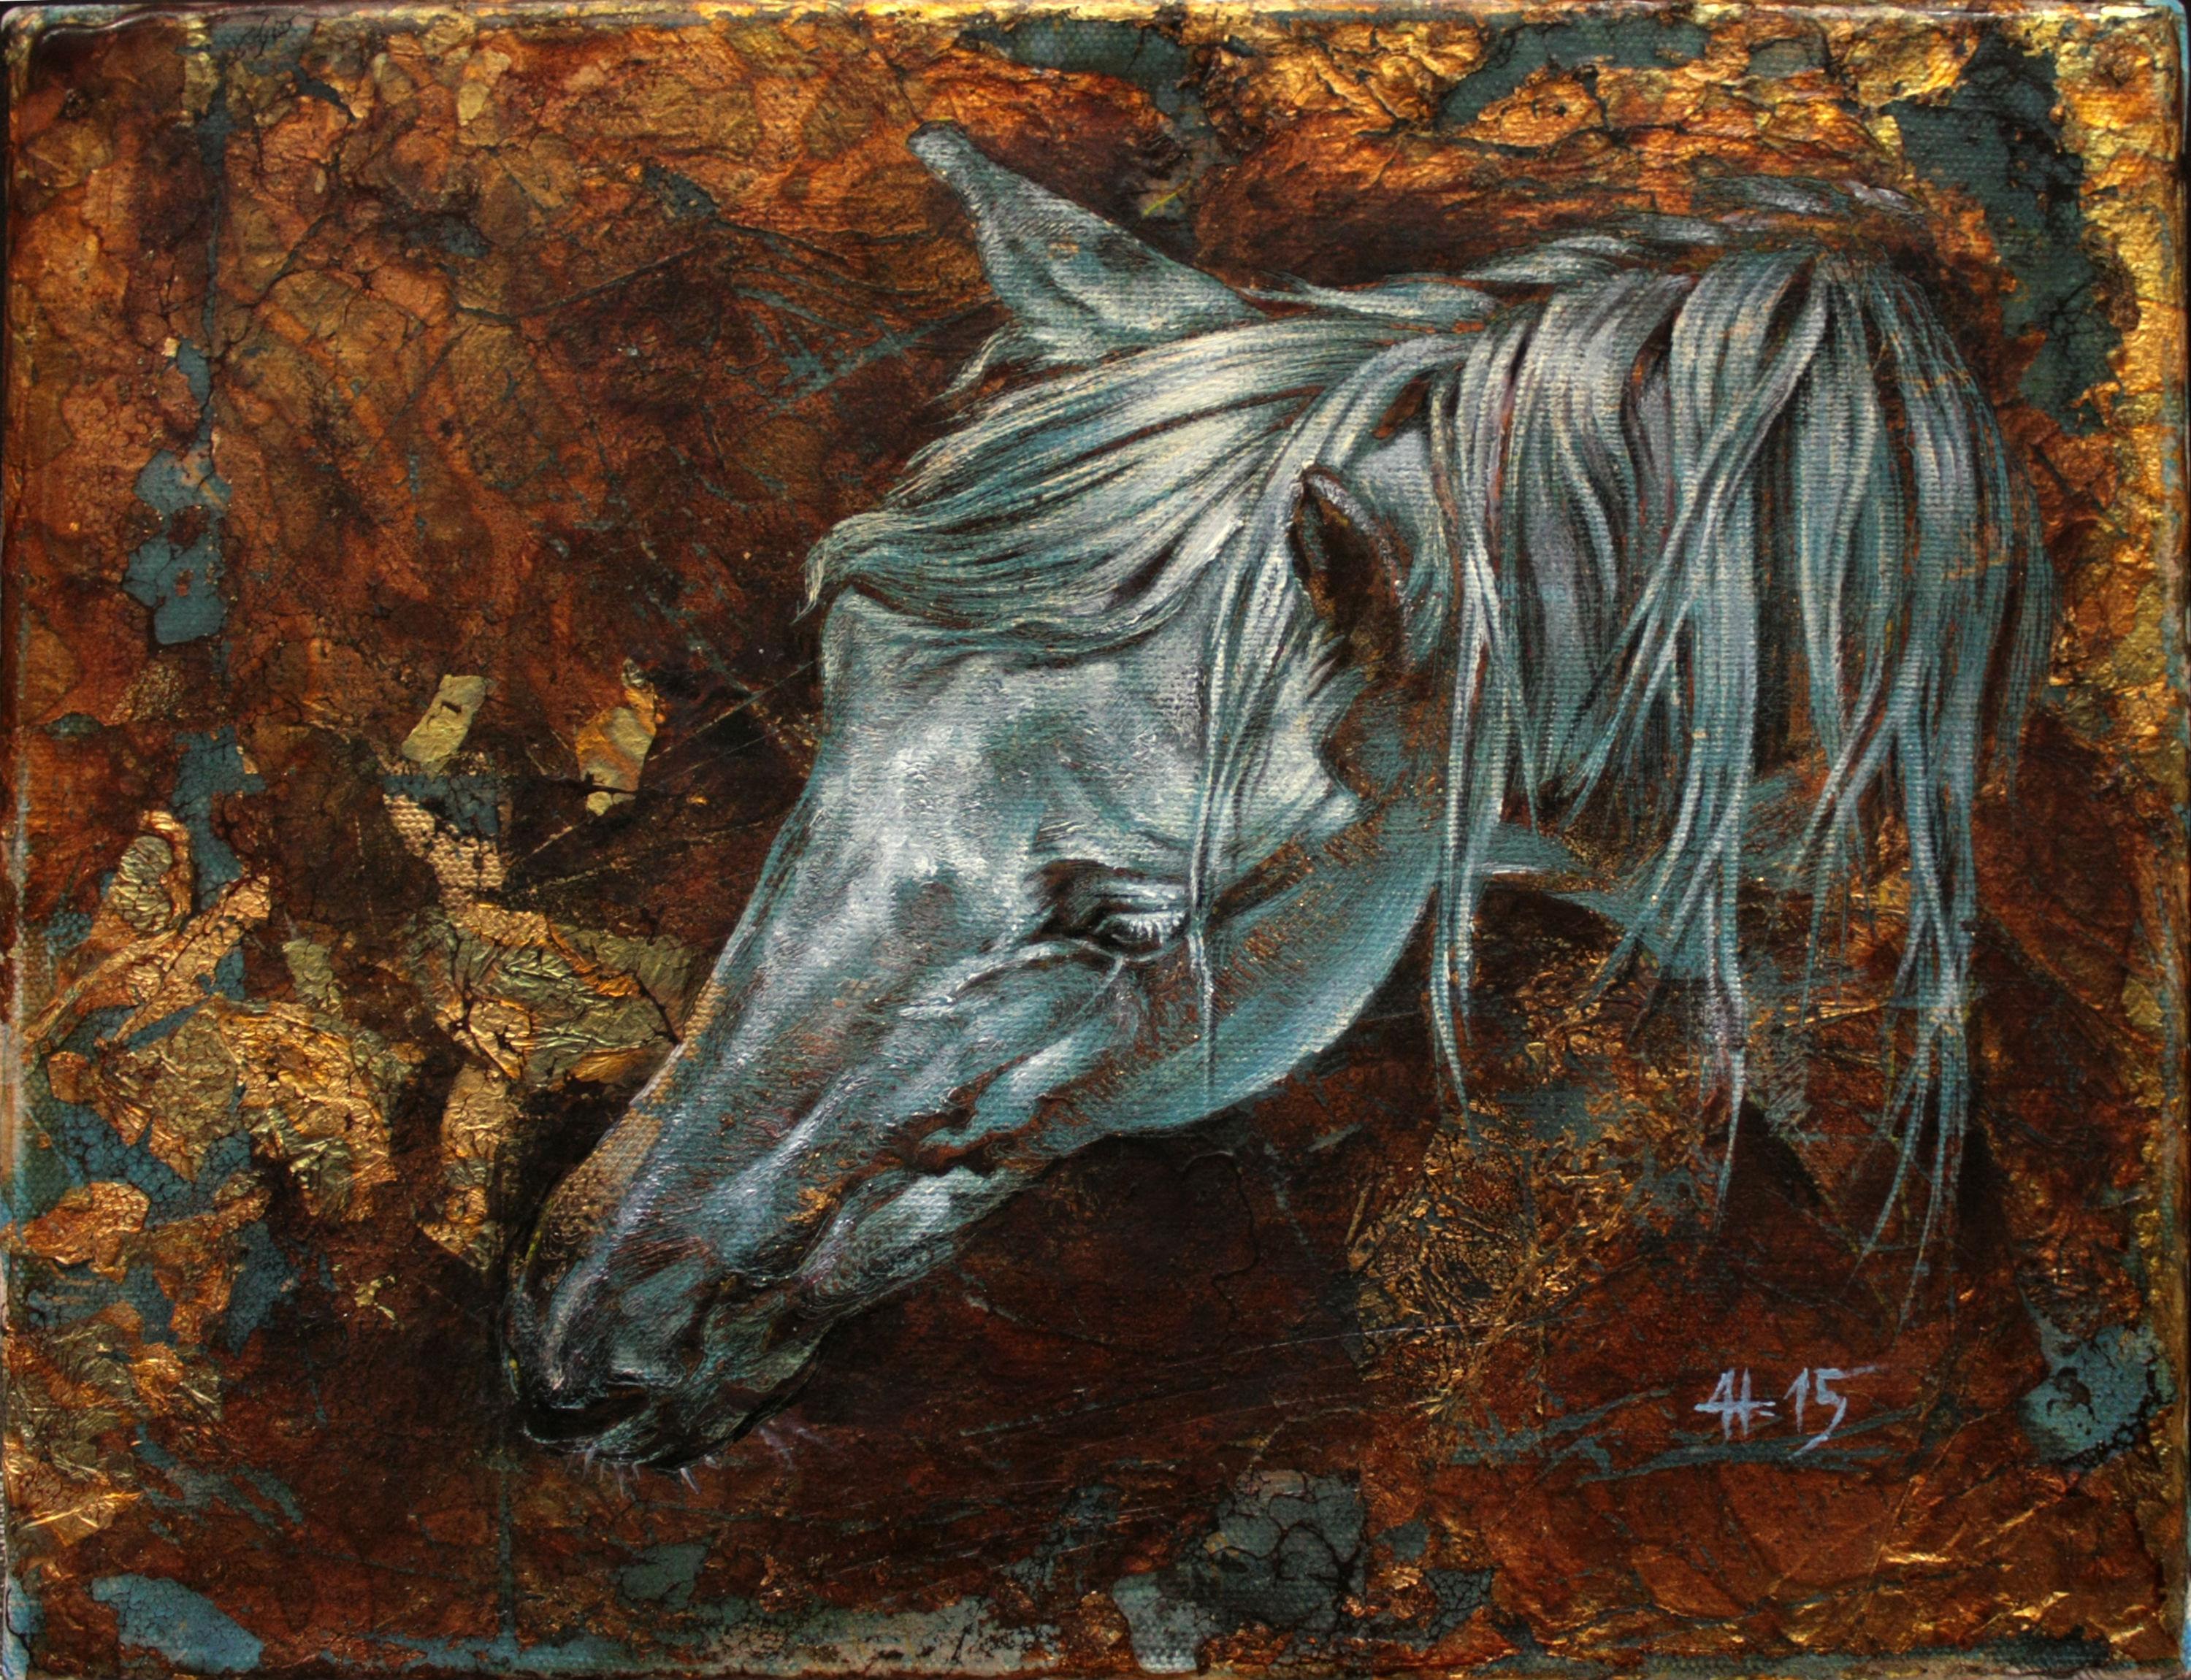 Animal Painting Daniela Nikolova - Acaustique et huile sur toile